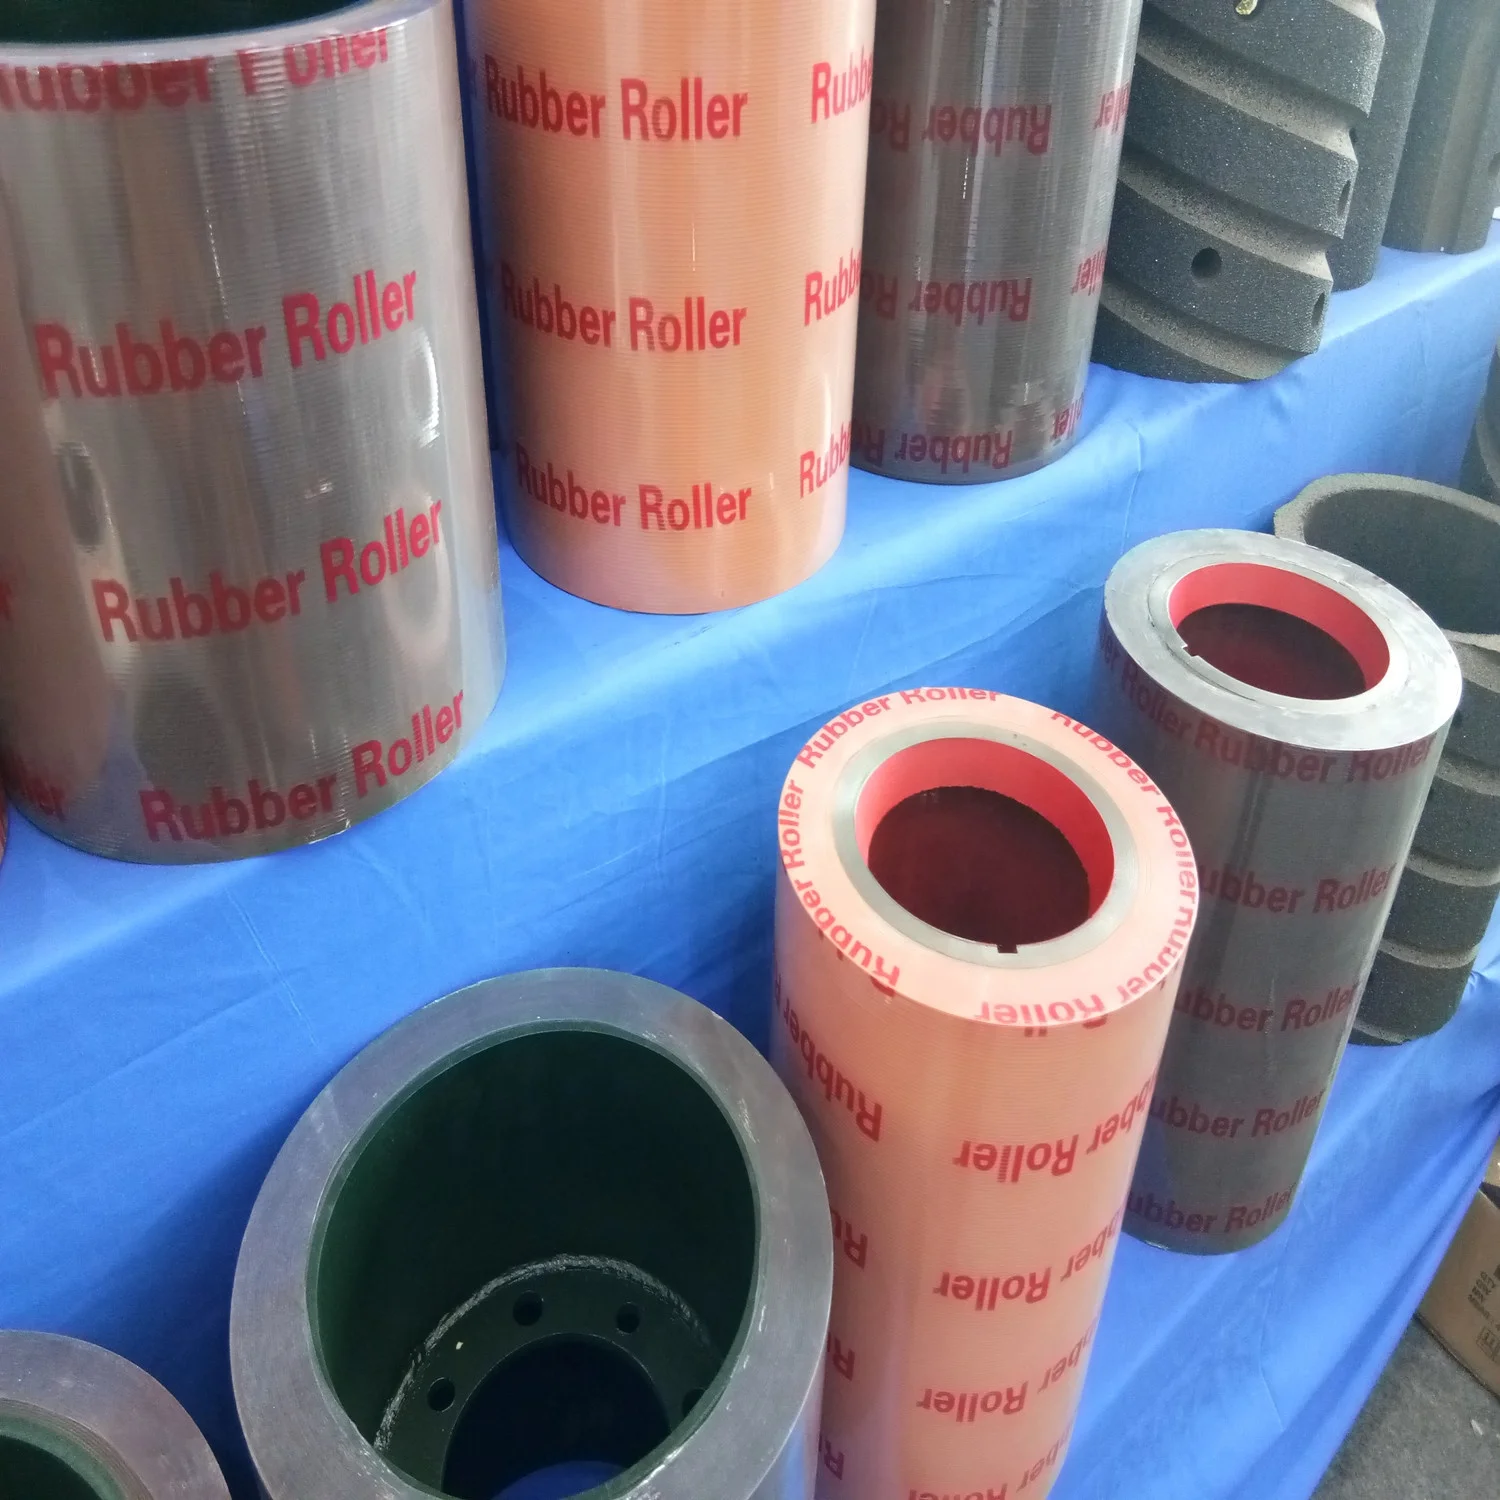 
sbr 10 inch rubber roller for husker 